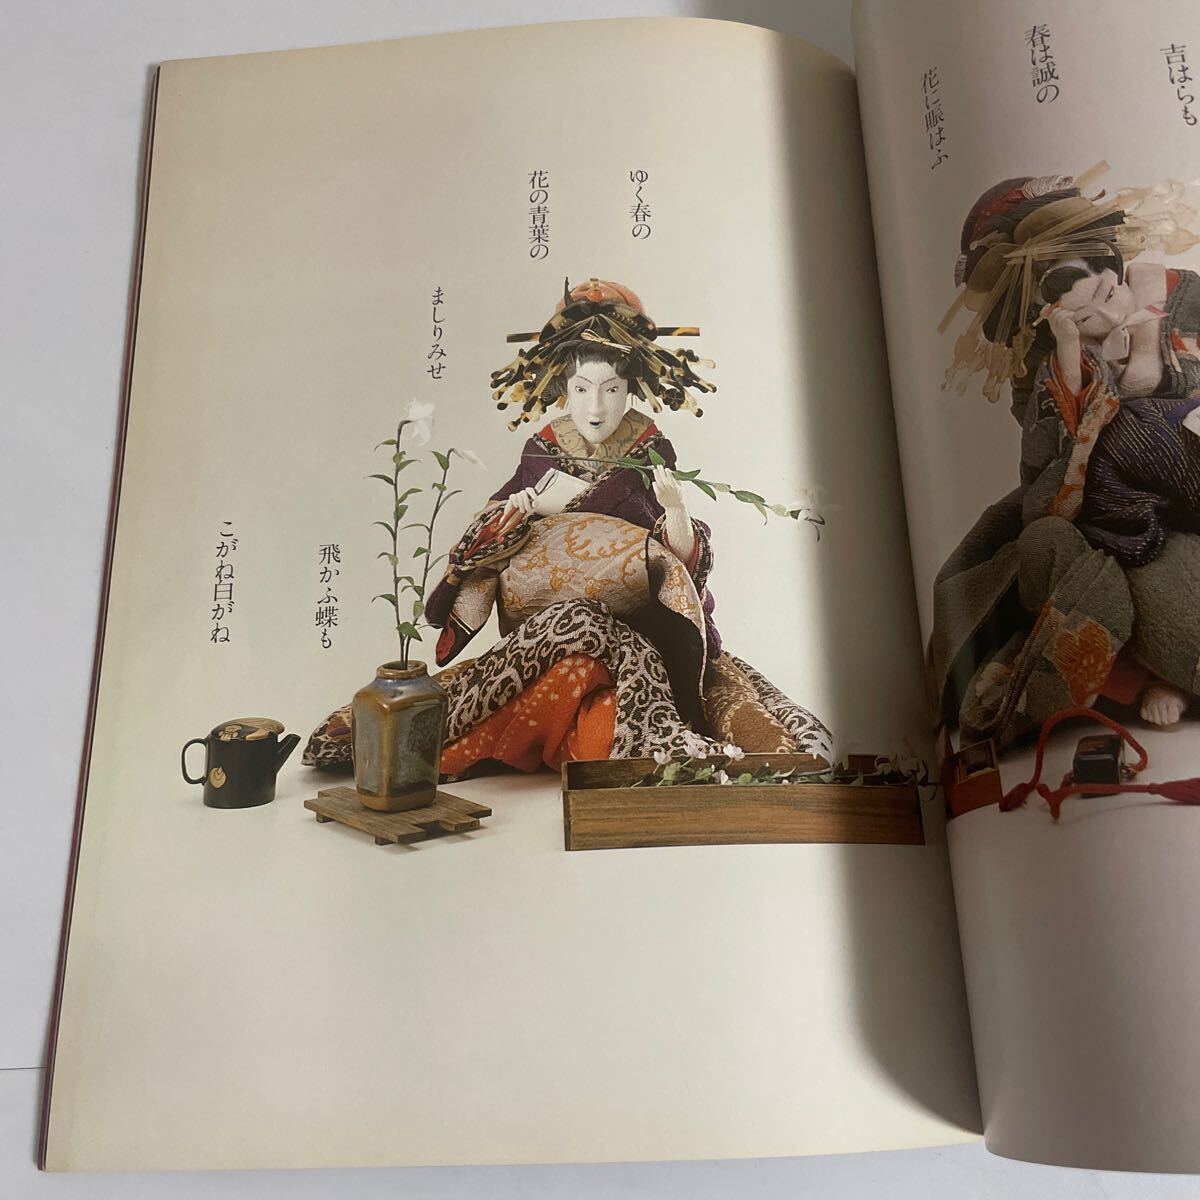 辻村ジュサブローの世界 吉原 失なわれた文化を求めて 図録 作品集 昭和56年発行 吉原遊郭 花魁 遊女 人形 写真集の画像6